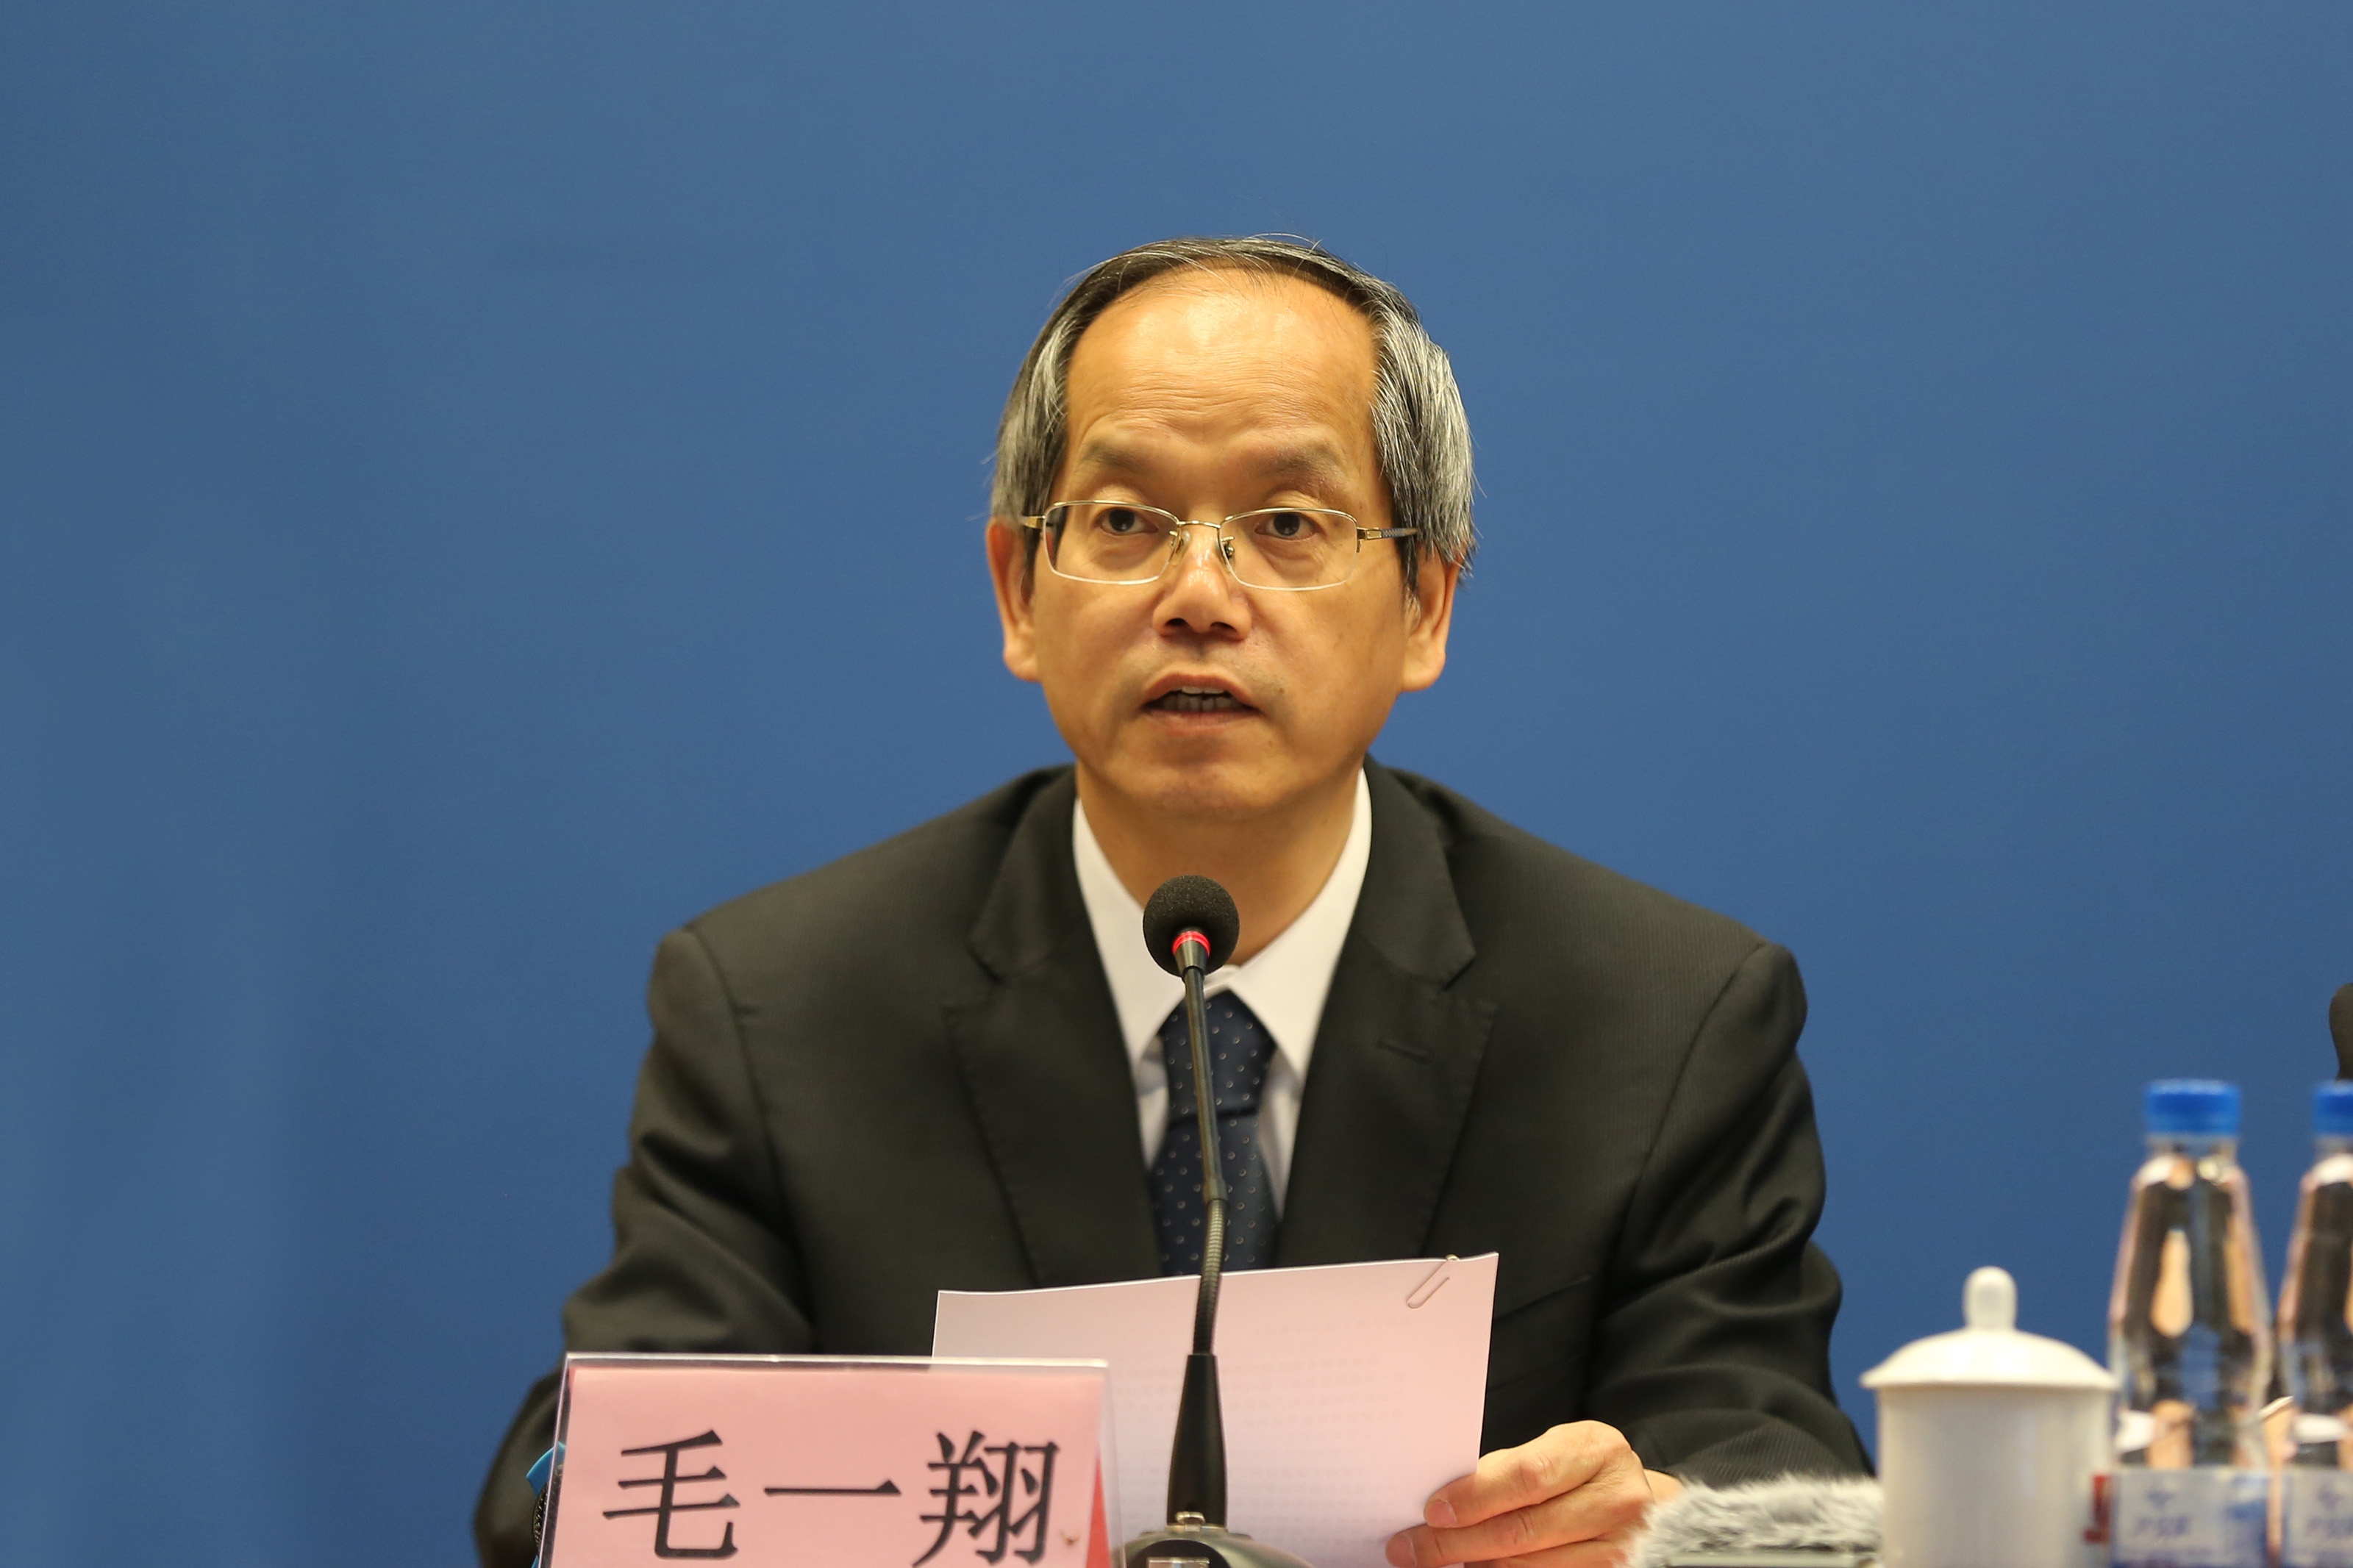 国务院国资委新闻中心主任毛一翔出席发布会。